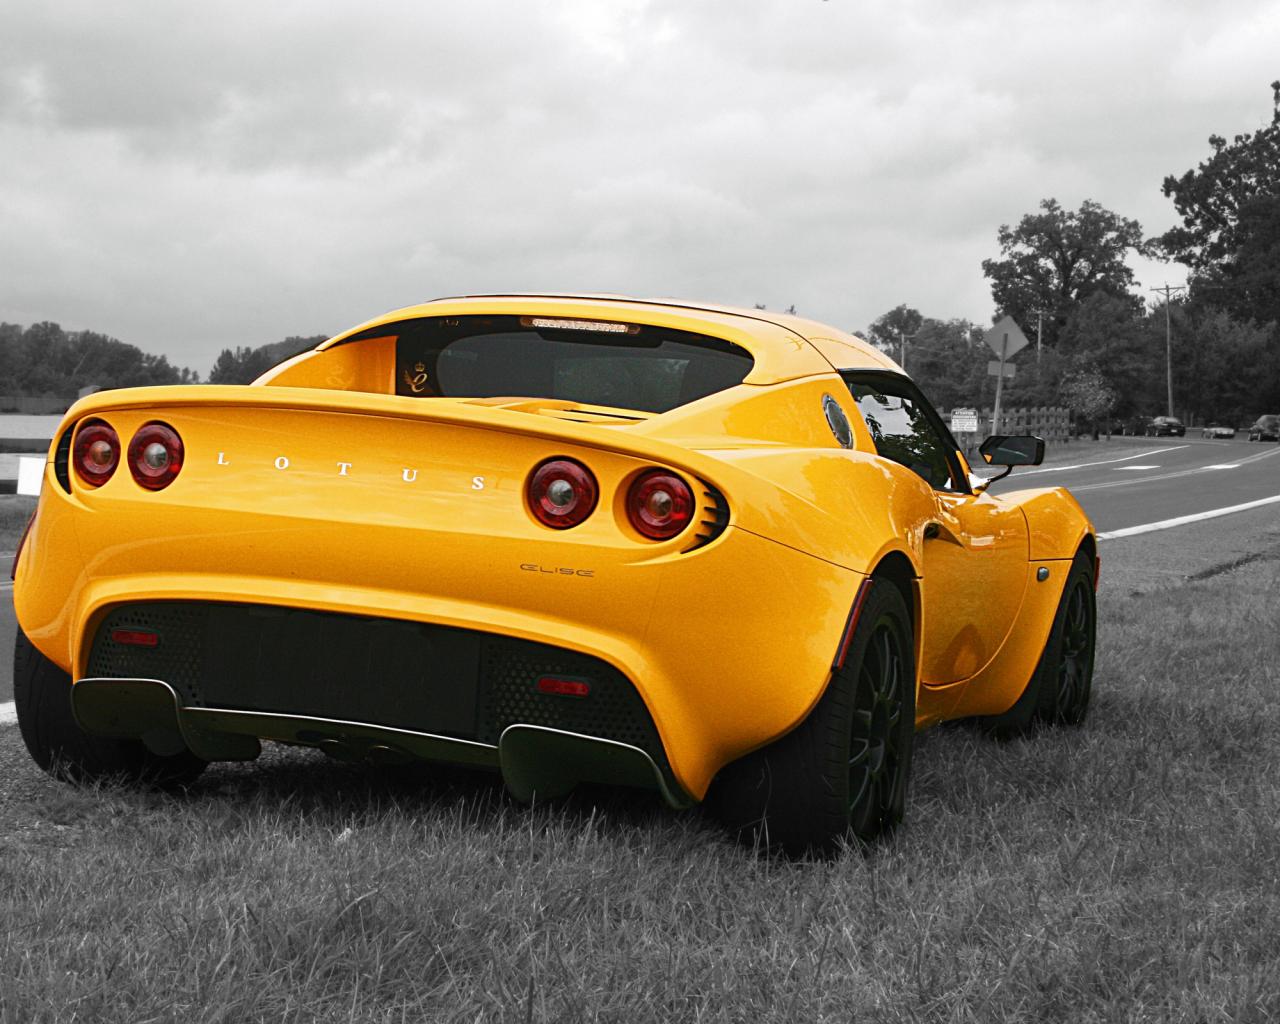 Lotus Elise желтого цвета, на чёрнобелом фоне 1280x1024